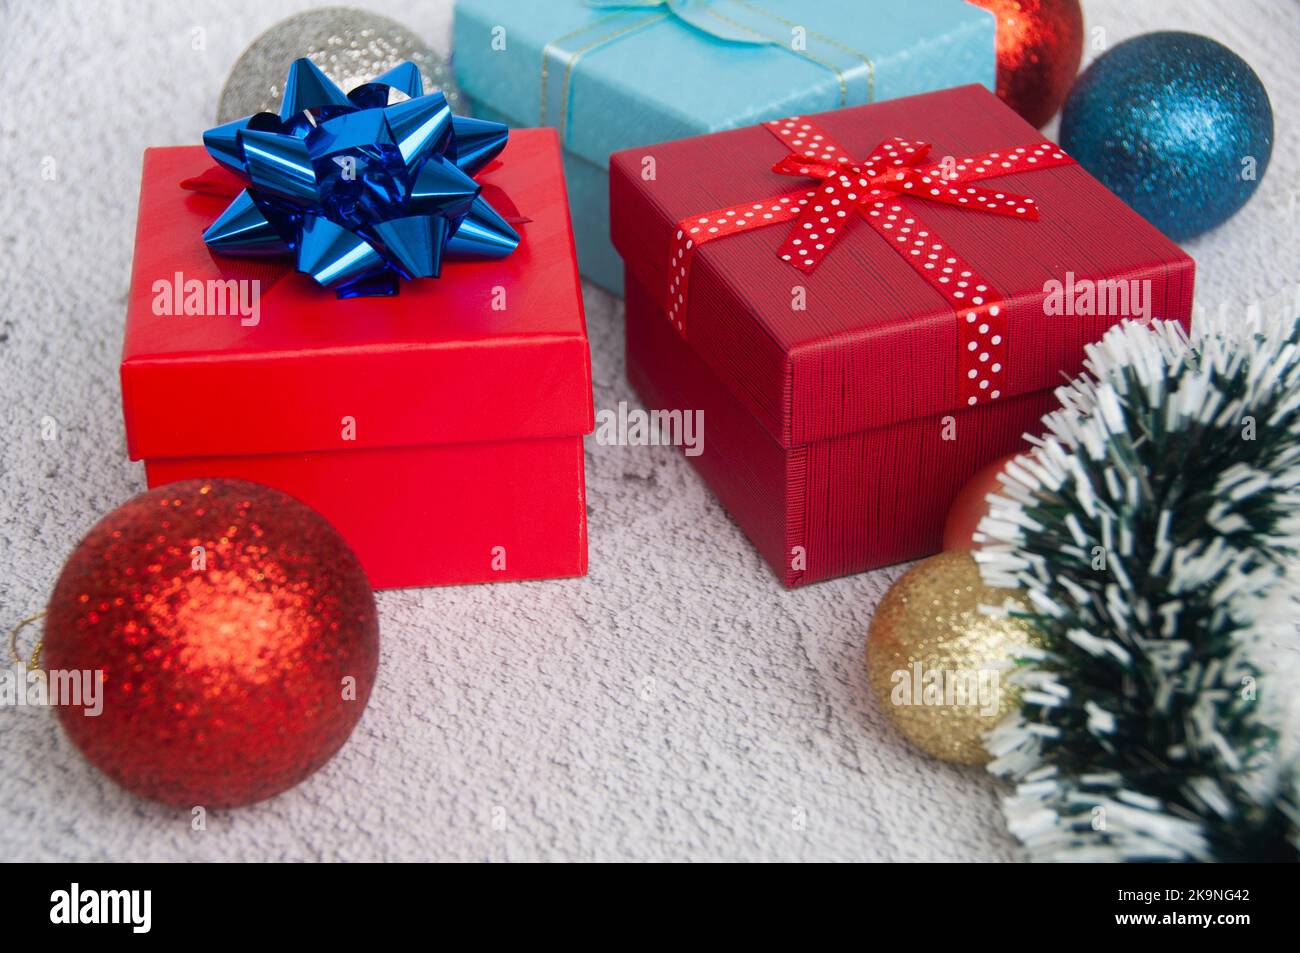 Weihnachtsgeschenke mit Weihnachtsdekoration Hintergrund. Weihnachtsgeschenke und Copy Space Konzept. Stockfoto